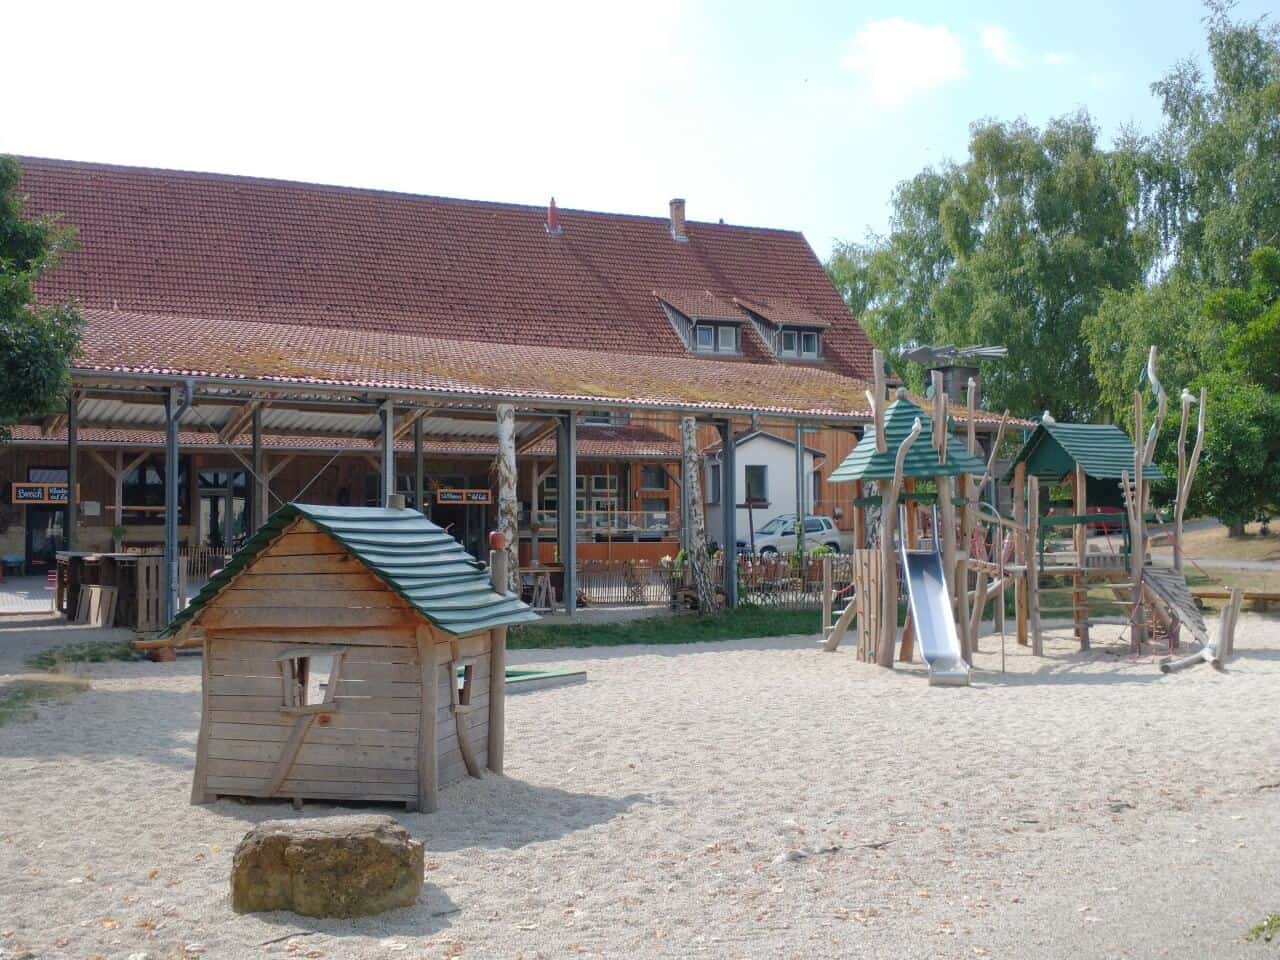 Kloster Volkenroda - Spielplatz